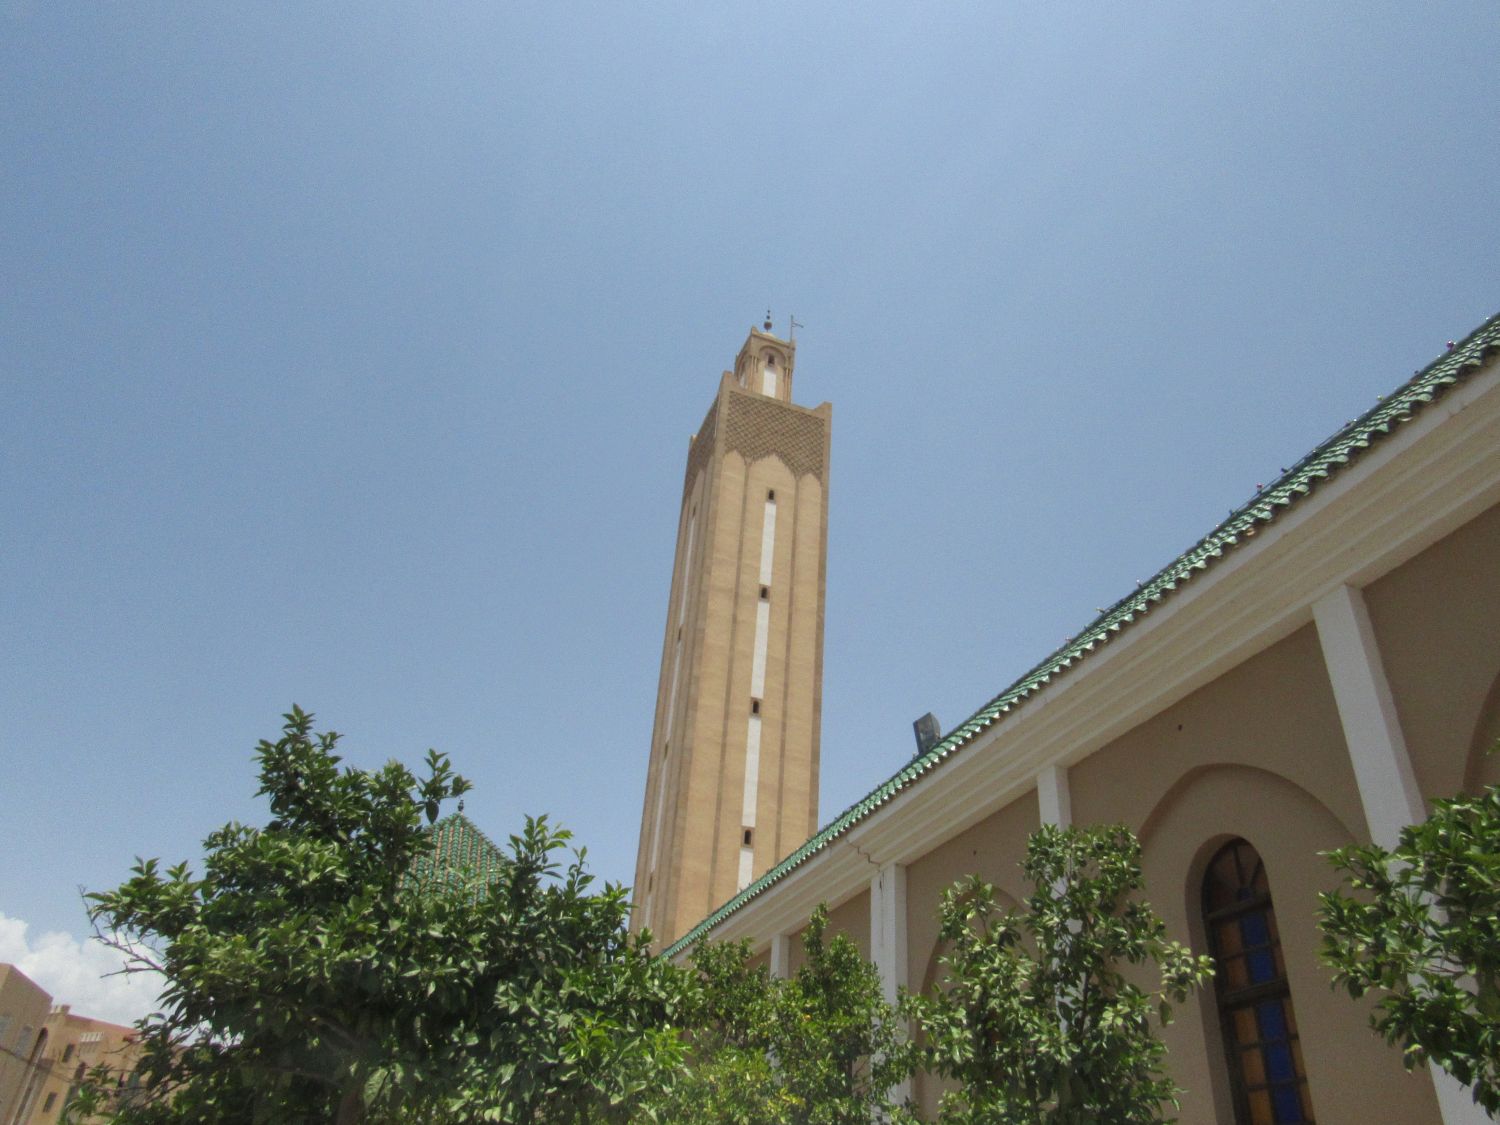 Exterior, upward view of the eastern facade toward the minaret